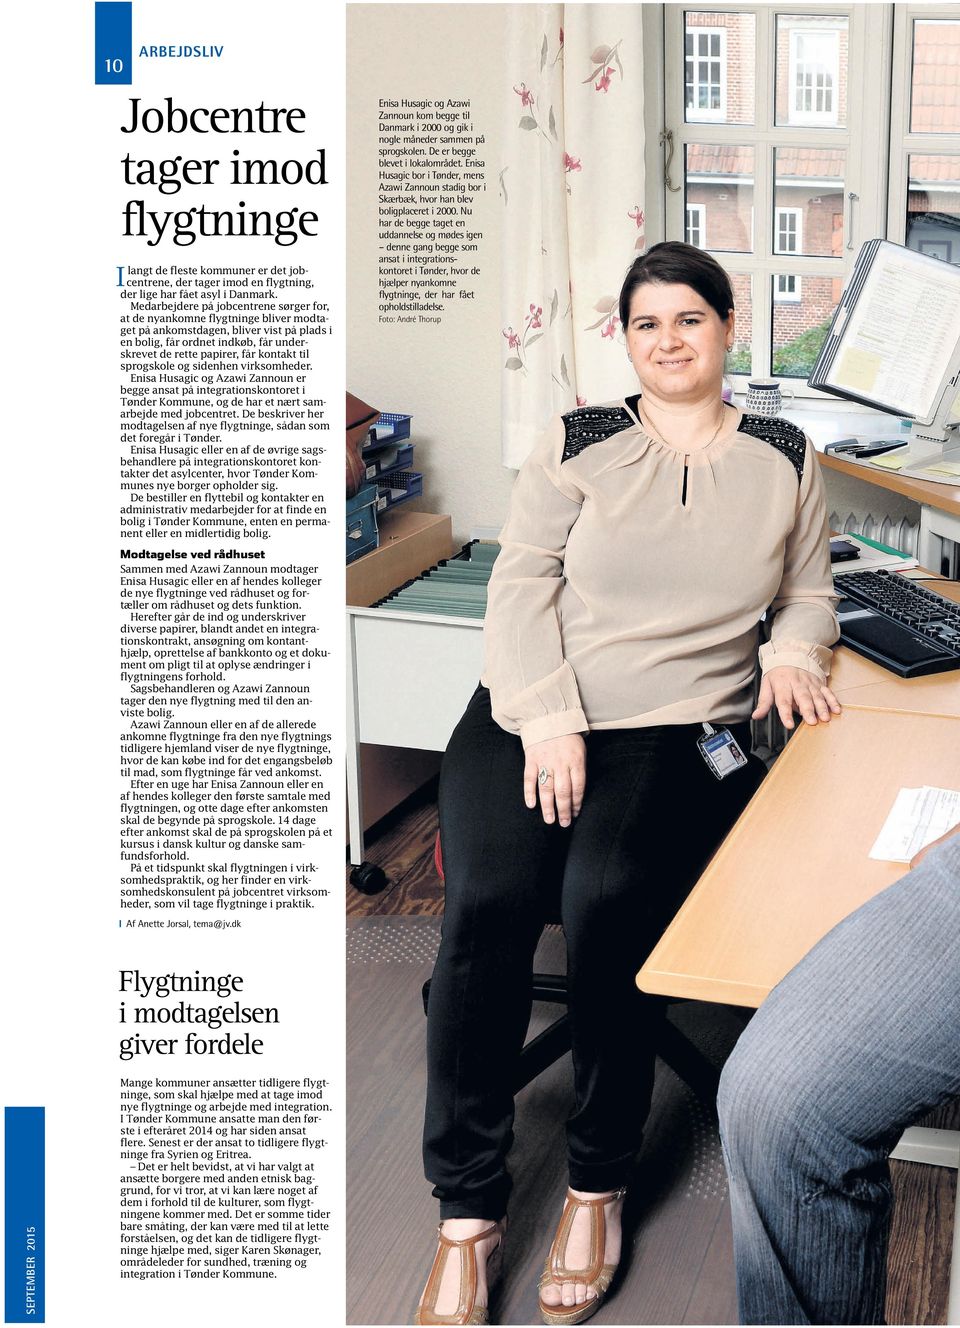 til sprogskole og sidenhen virksomheder. Enisa Husagic og Azawi Zannoun er begge ansat på integrationskontoret i Tønder Kommune, og de har et nært samarbejde med jobcentret.